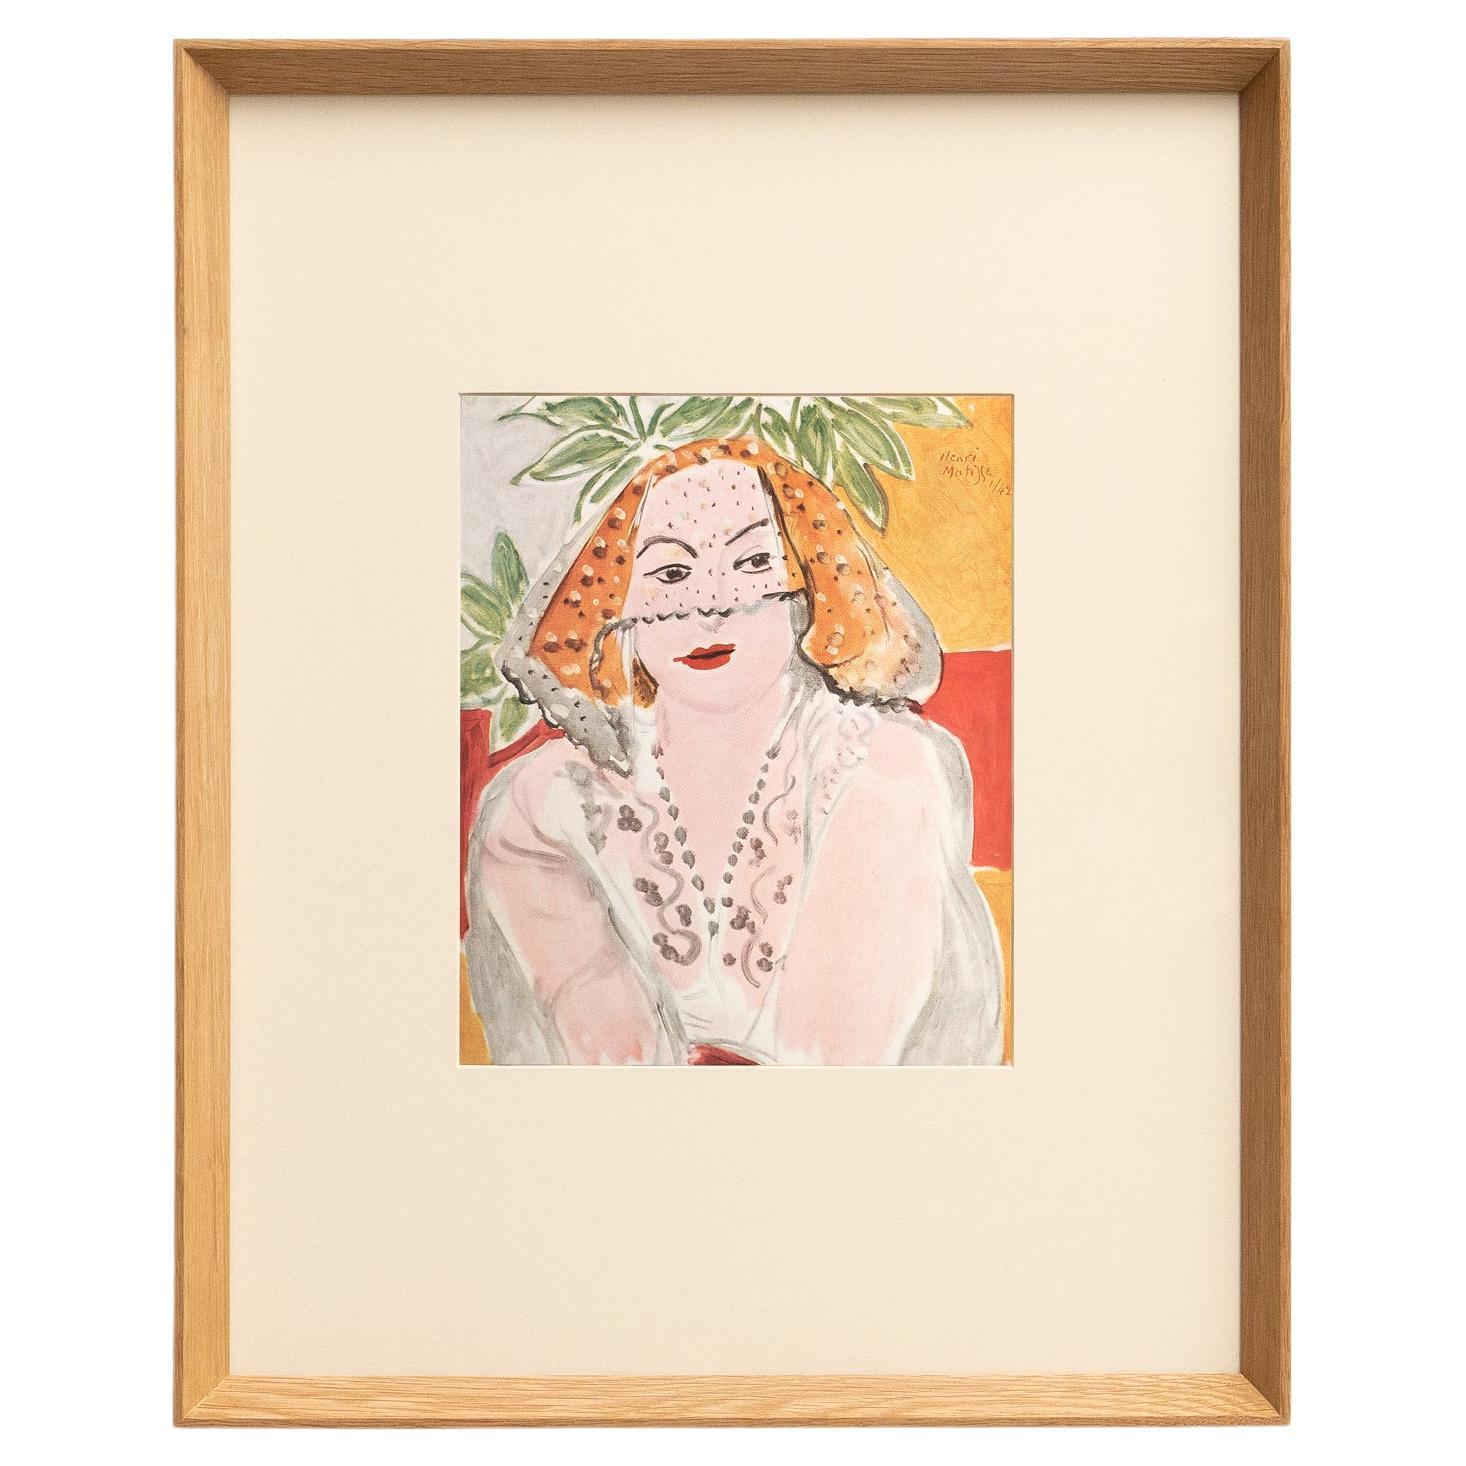 Seltene Farblithographie: Ein Einblick in Matisse' künstlerische Meisterschaft im Angebot